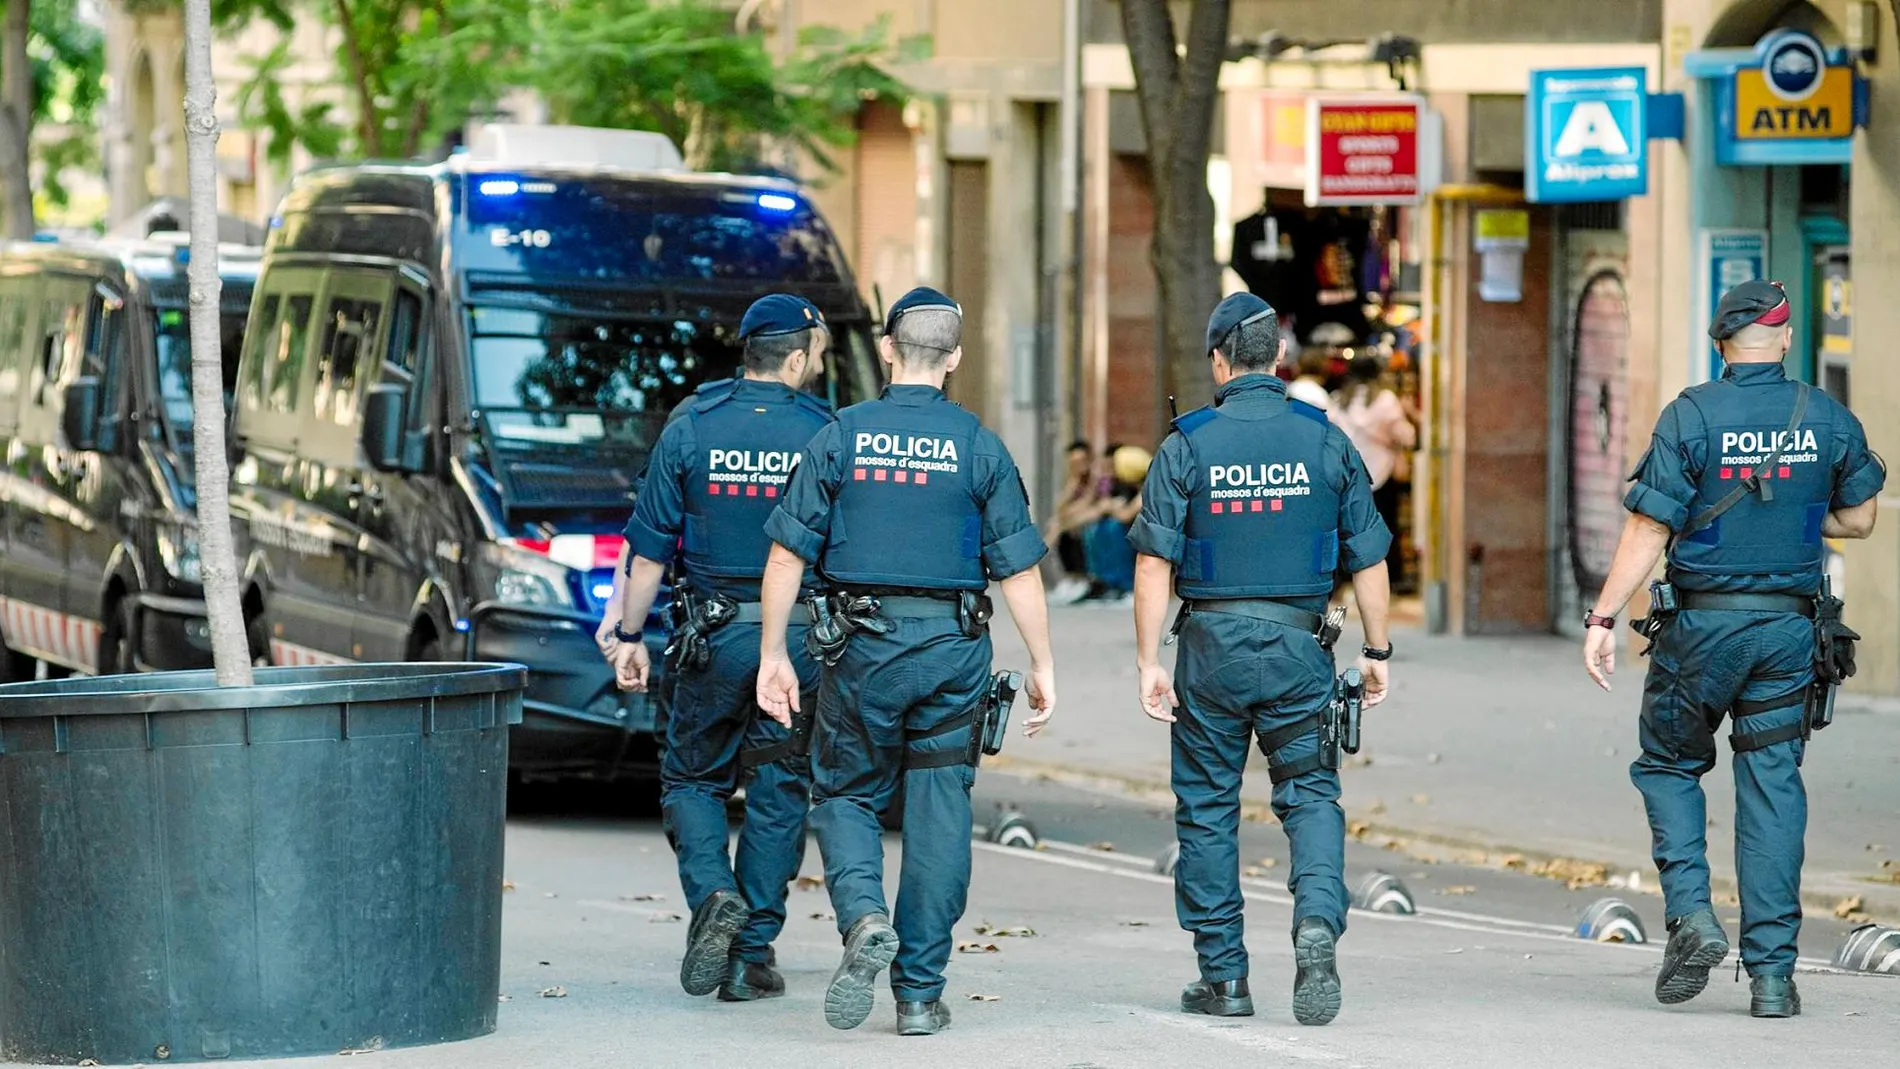 Los carteristas habituales en el barrio de la Sagrada Familia se han trasladado al Metro por la presión policial tras los atentados de las ramblas, según los vecinos